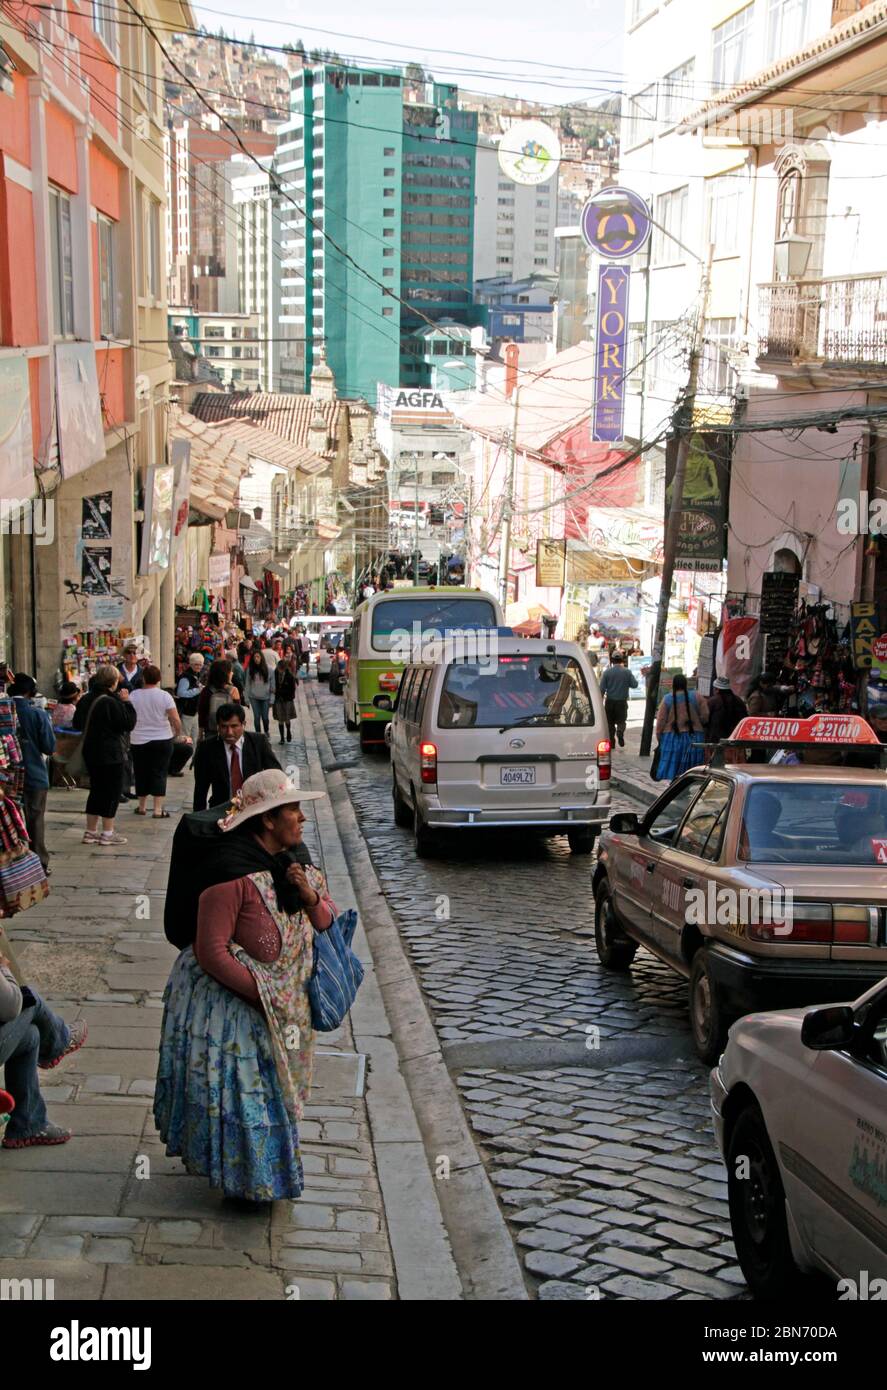 2 giugno 2016, - la Paz, Bolivia: Le persone sulle strade ripide di la Paz, Bolivia, che sono esigenti per i visitatori a causa dell'altitudine. Foto Stock